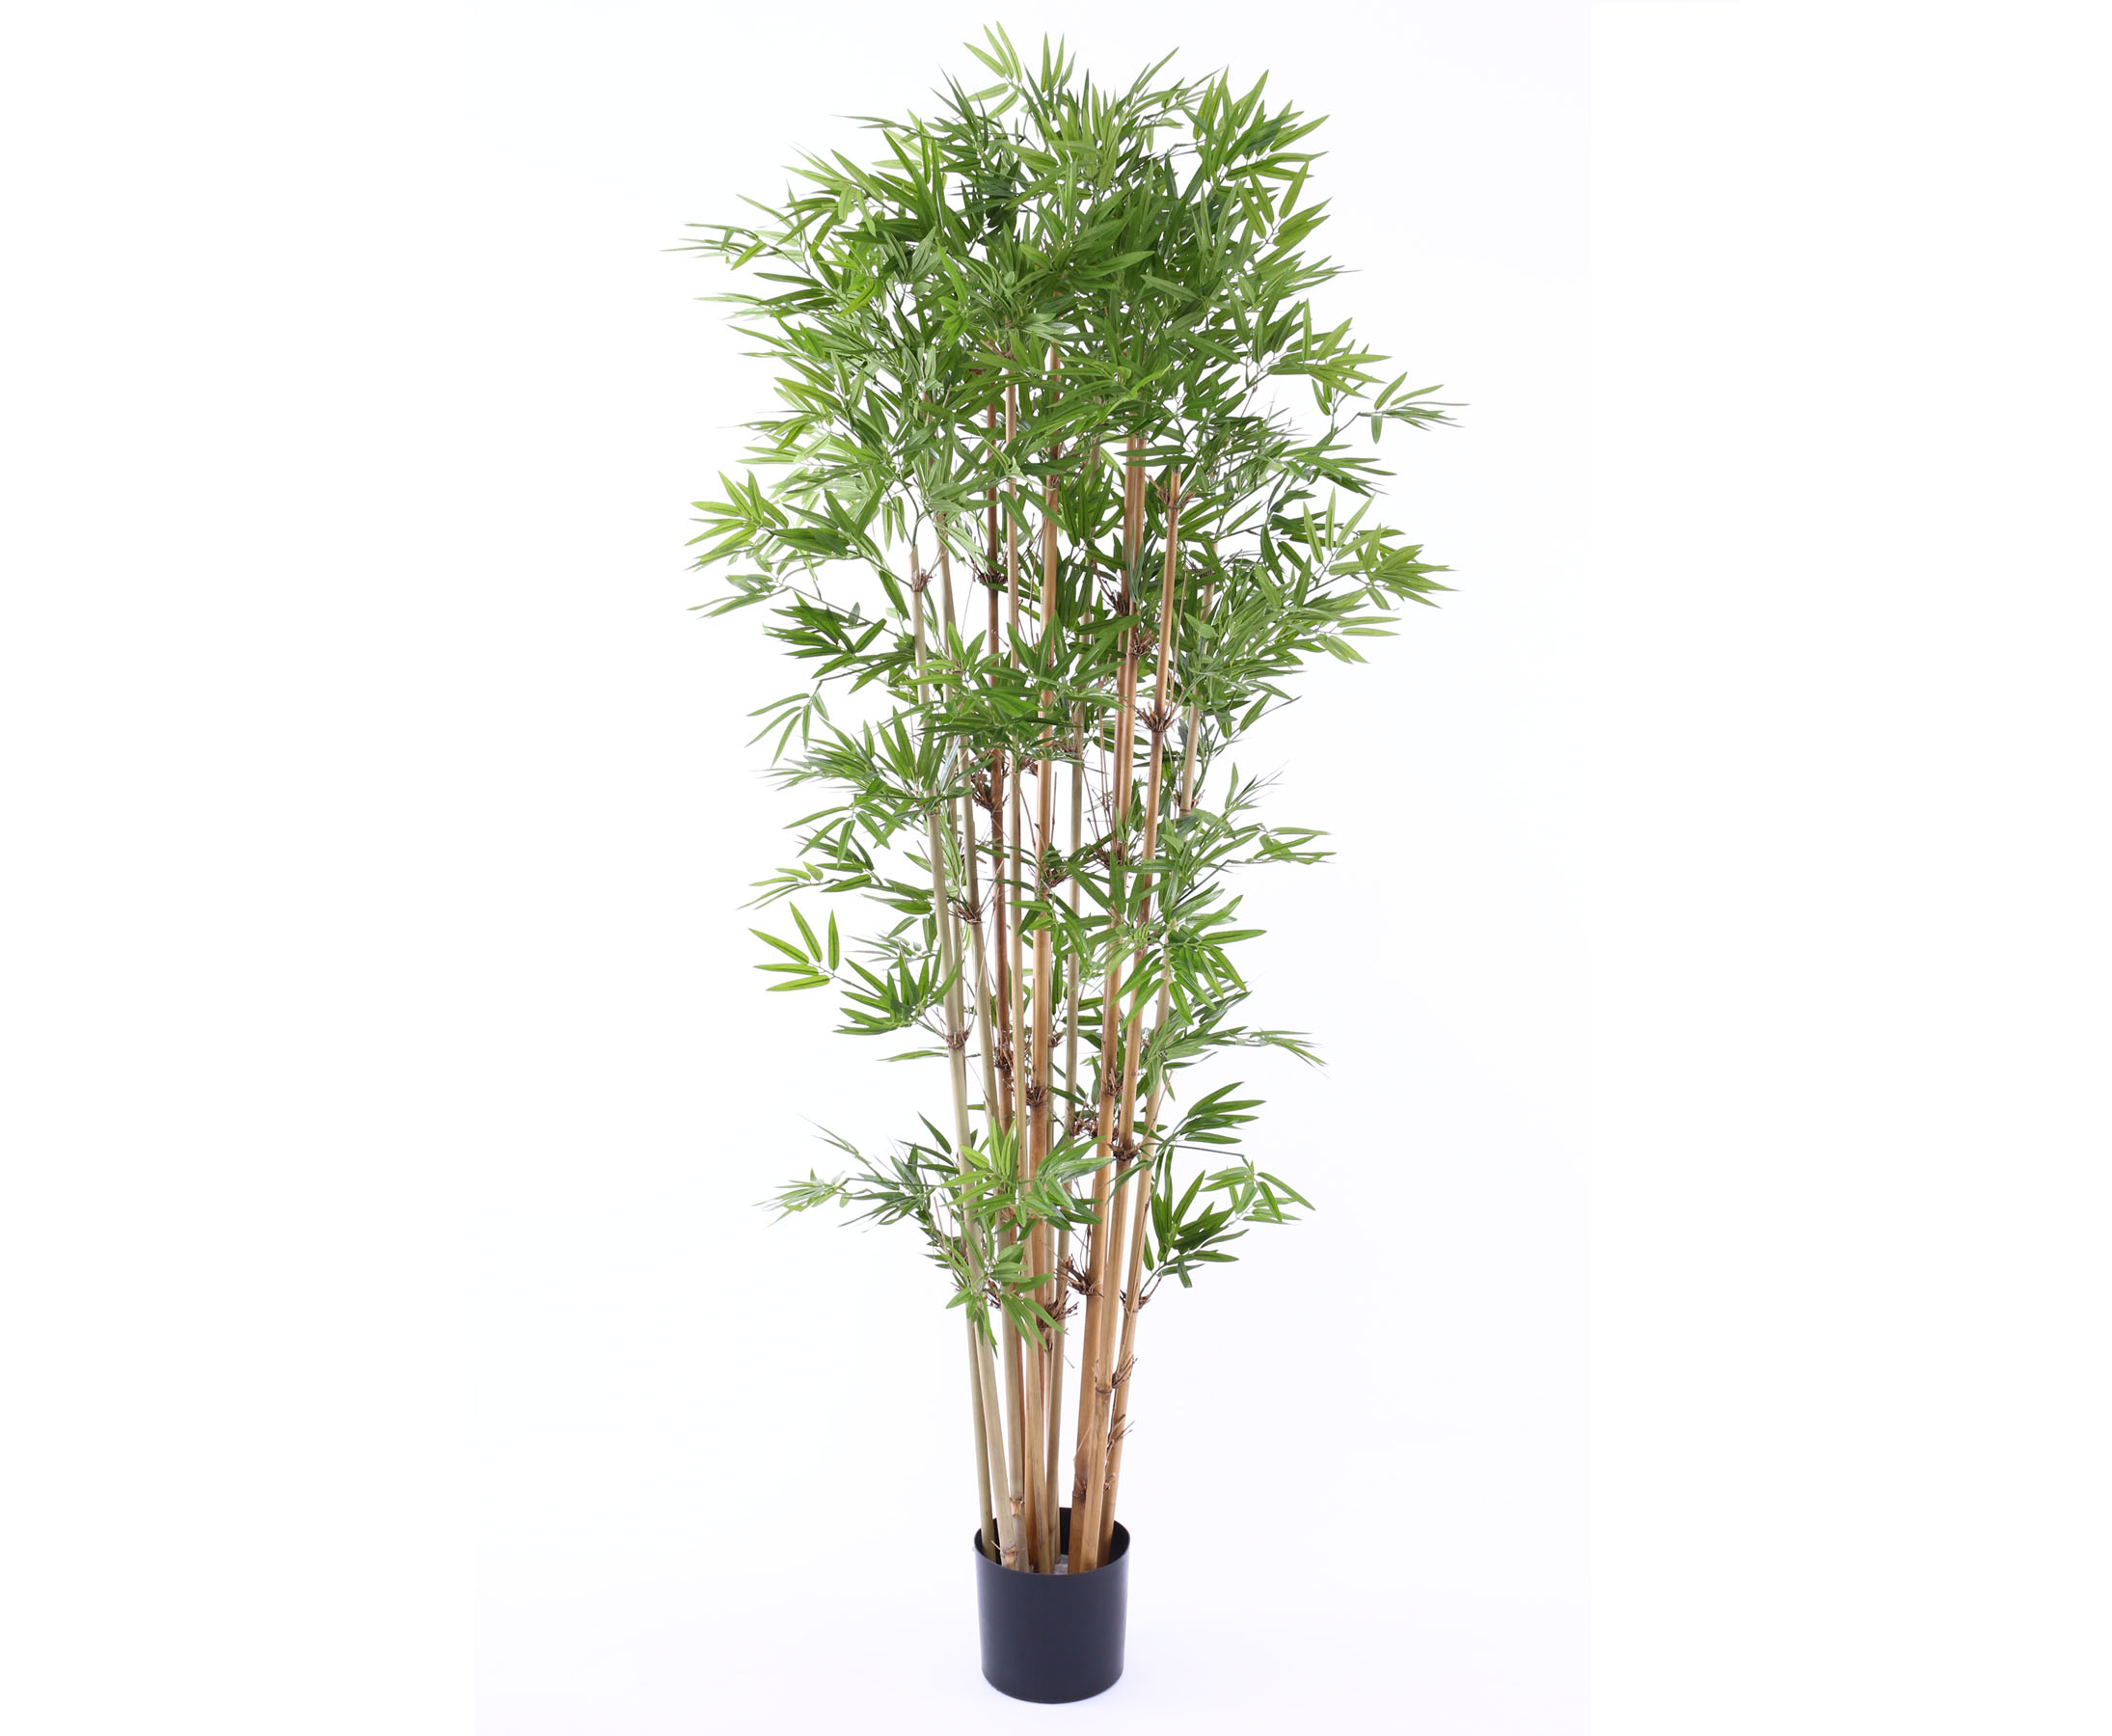 Hochwertigen Kunstbaum Bambus mit 180cm hier bestellen | Kunstbäume